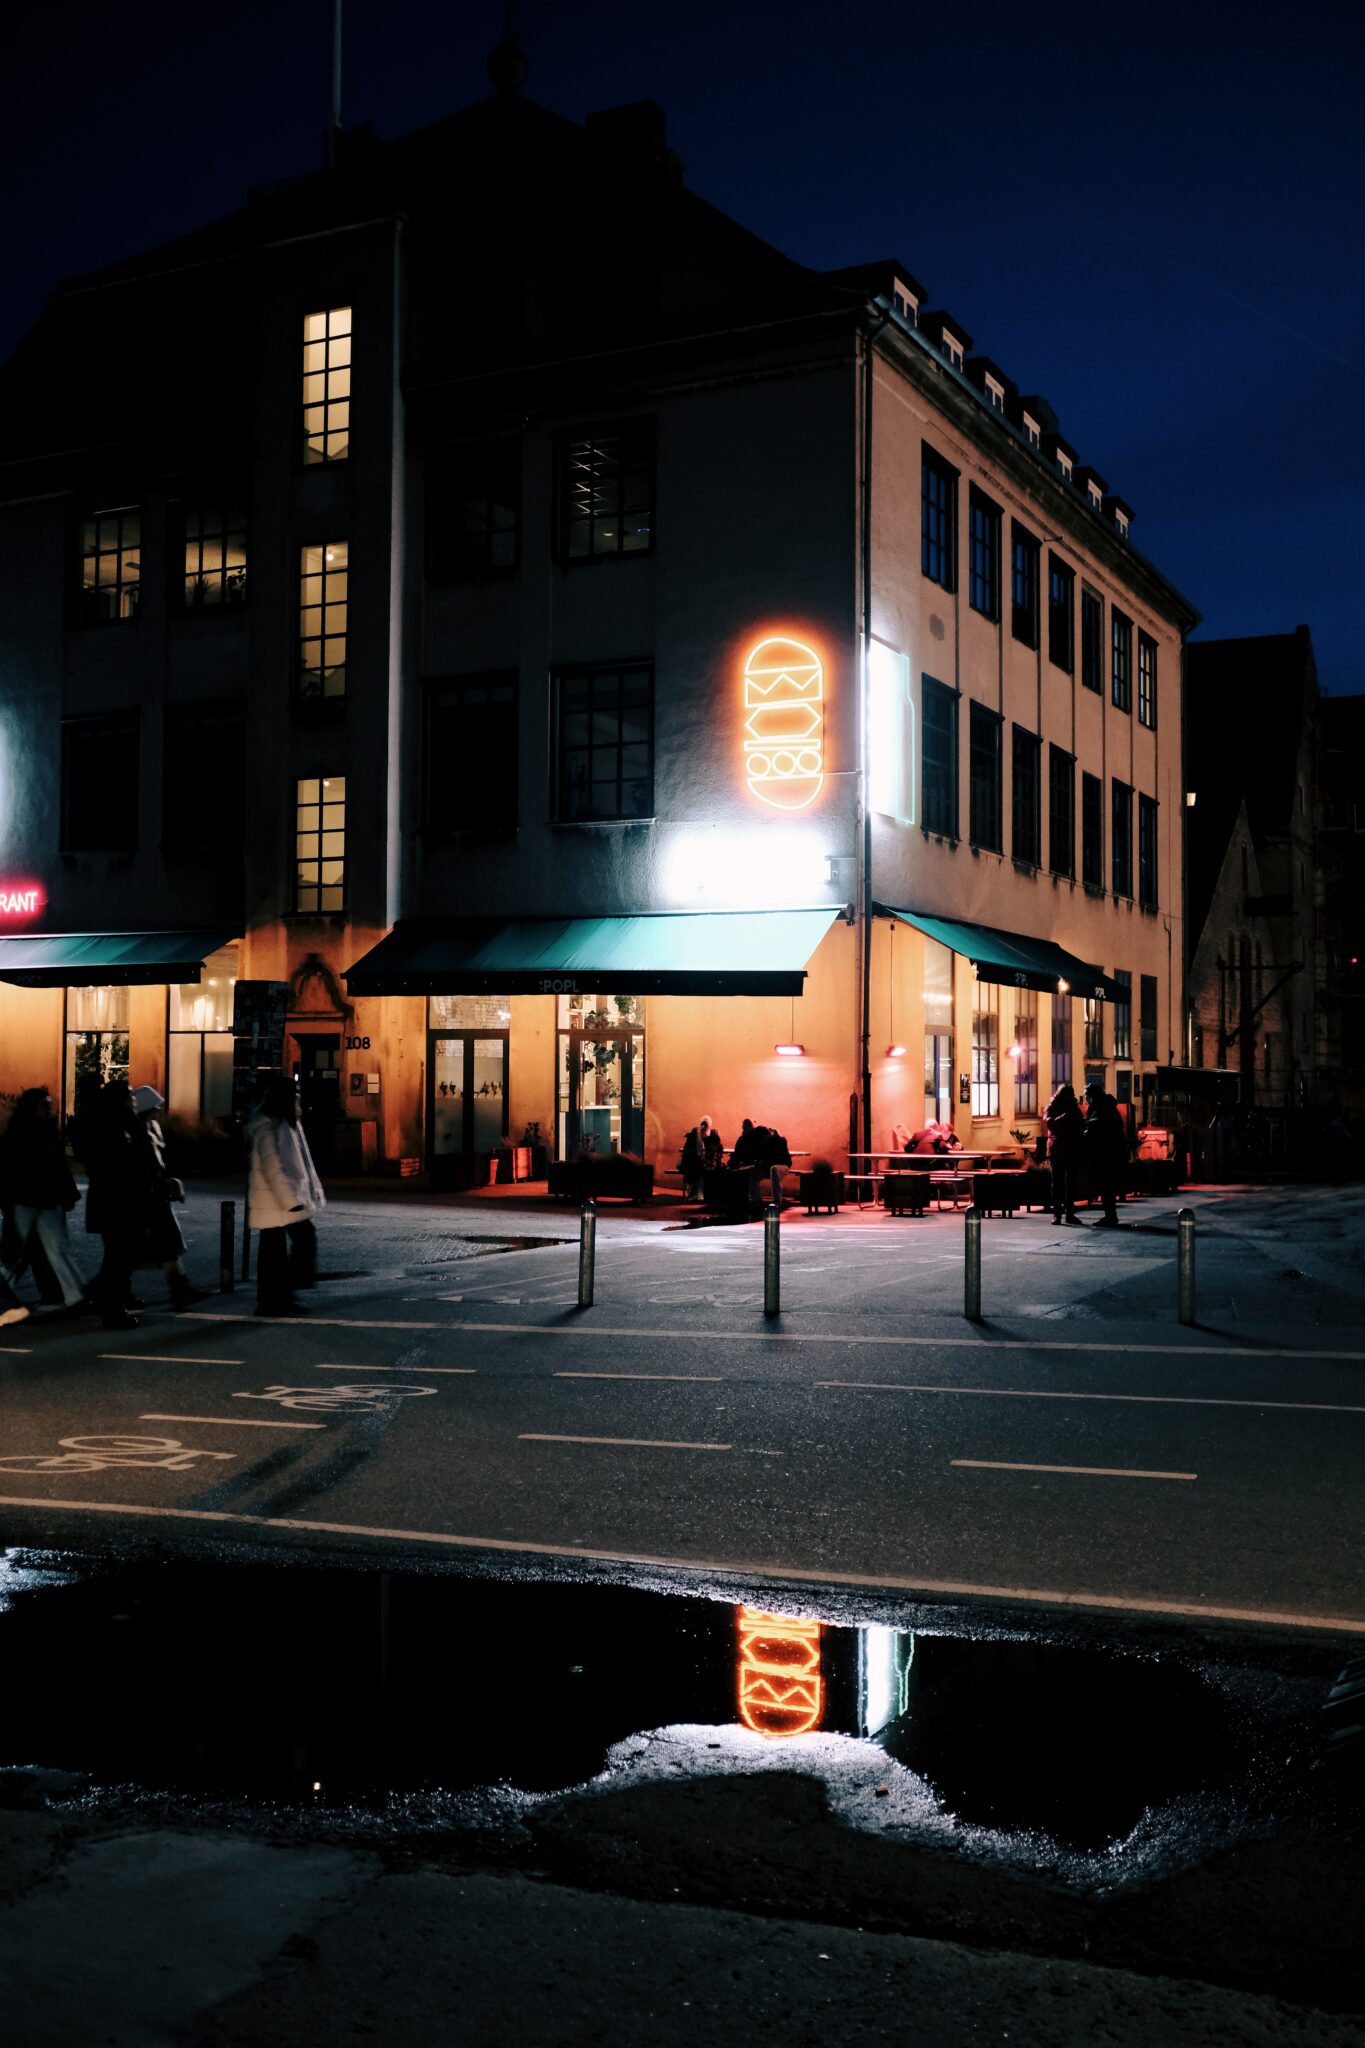 Spiegelungen der Leuchtreklame auf den Straßen von Kopenhagen nach einem Regenschauer.